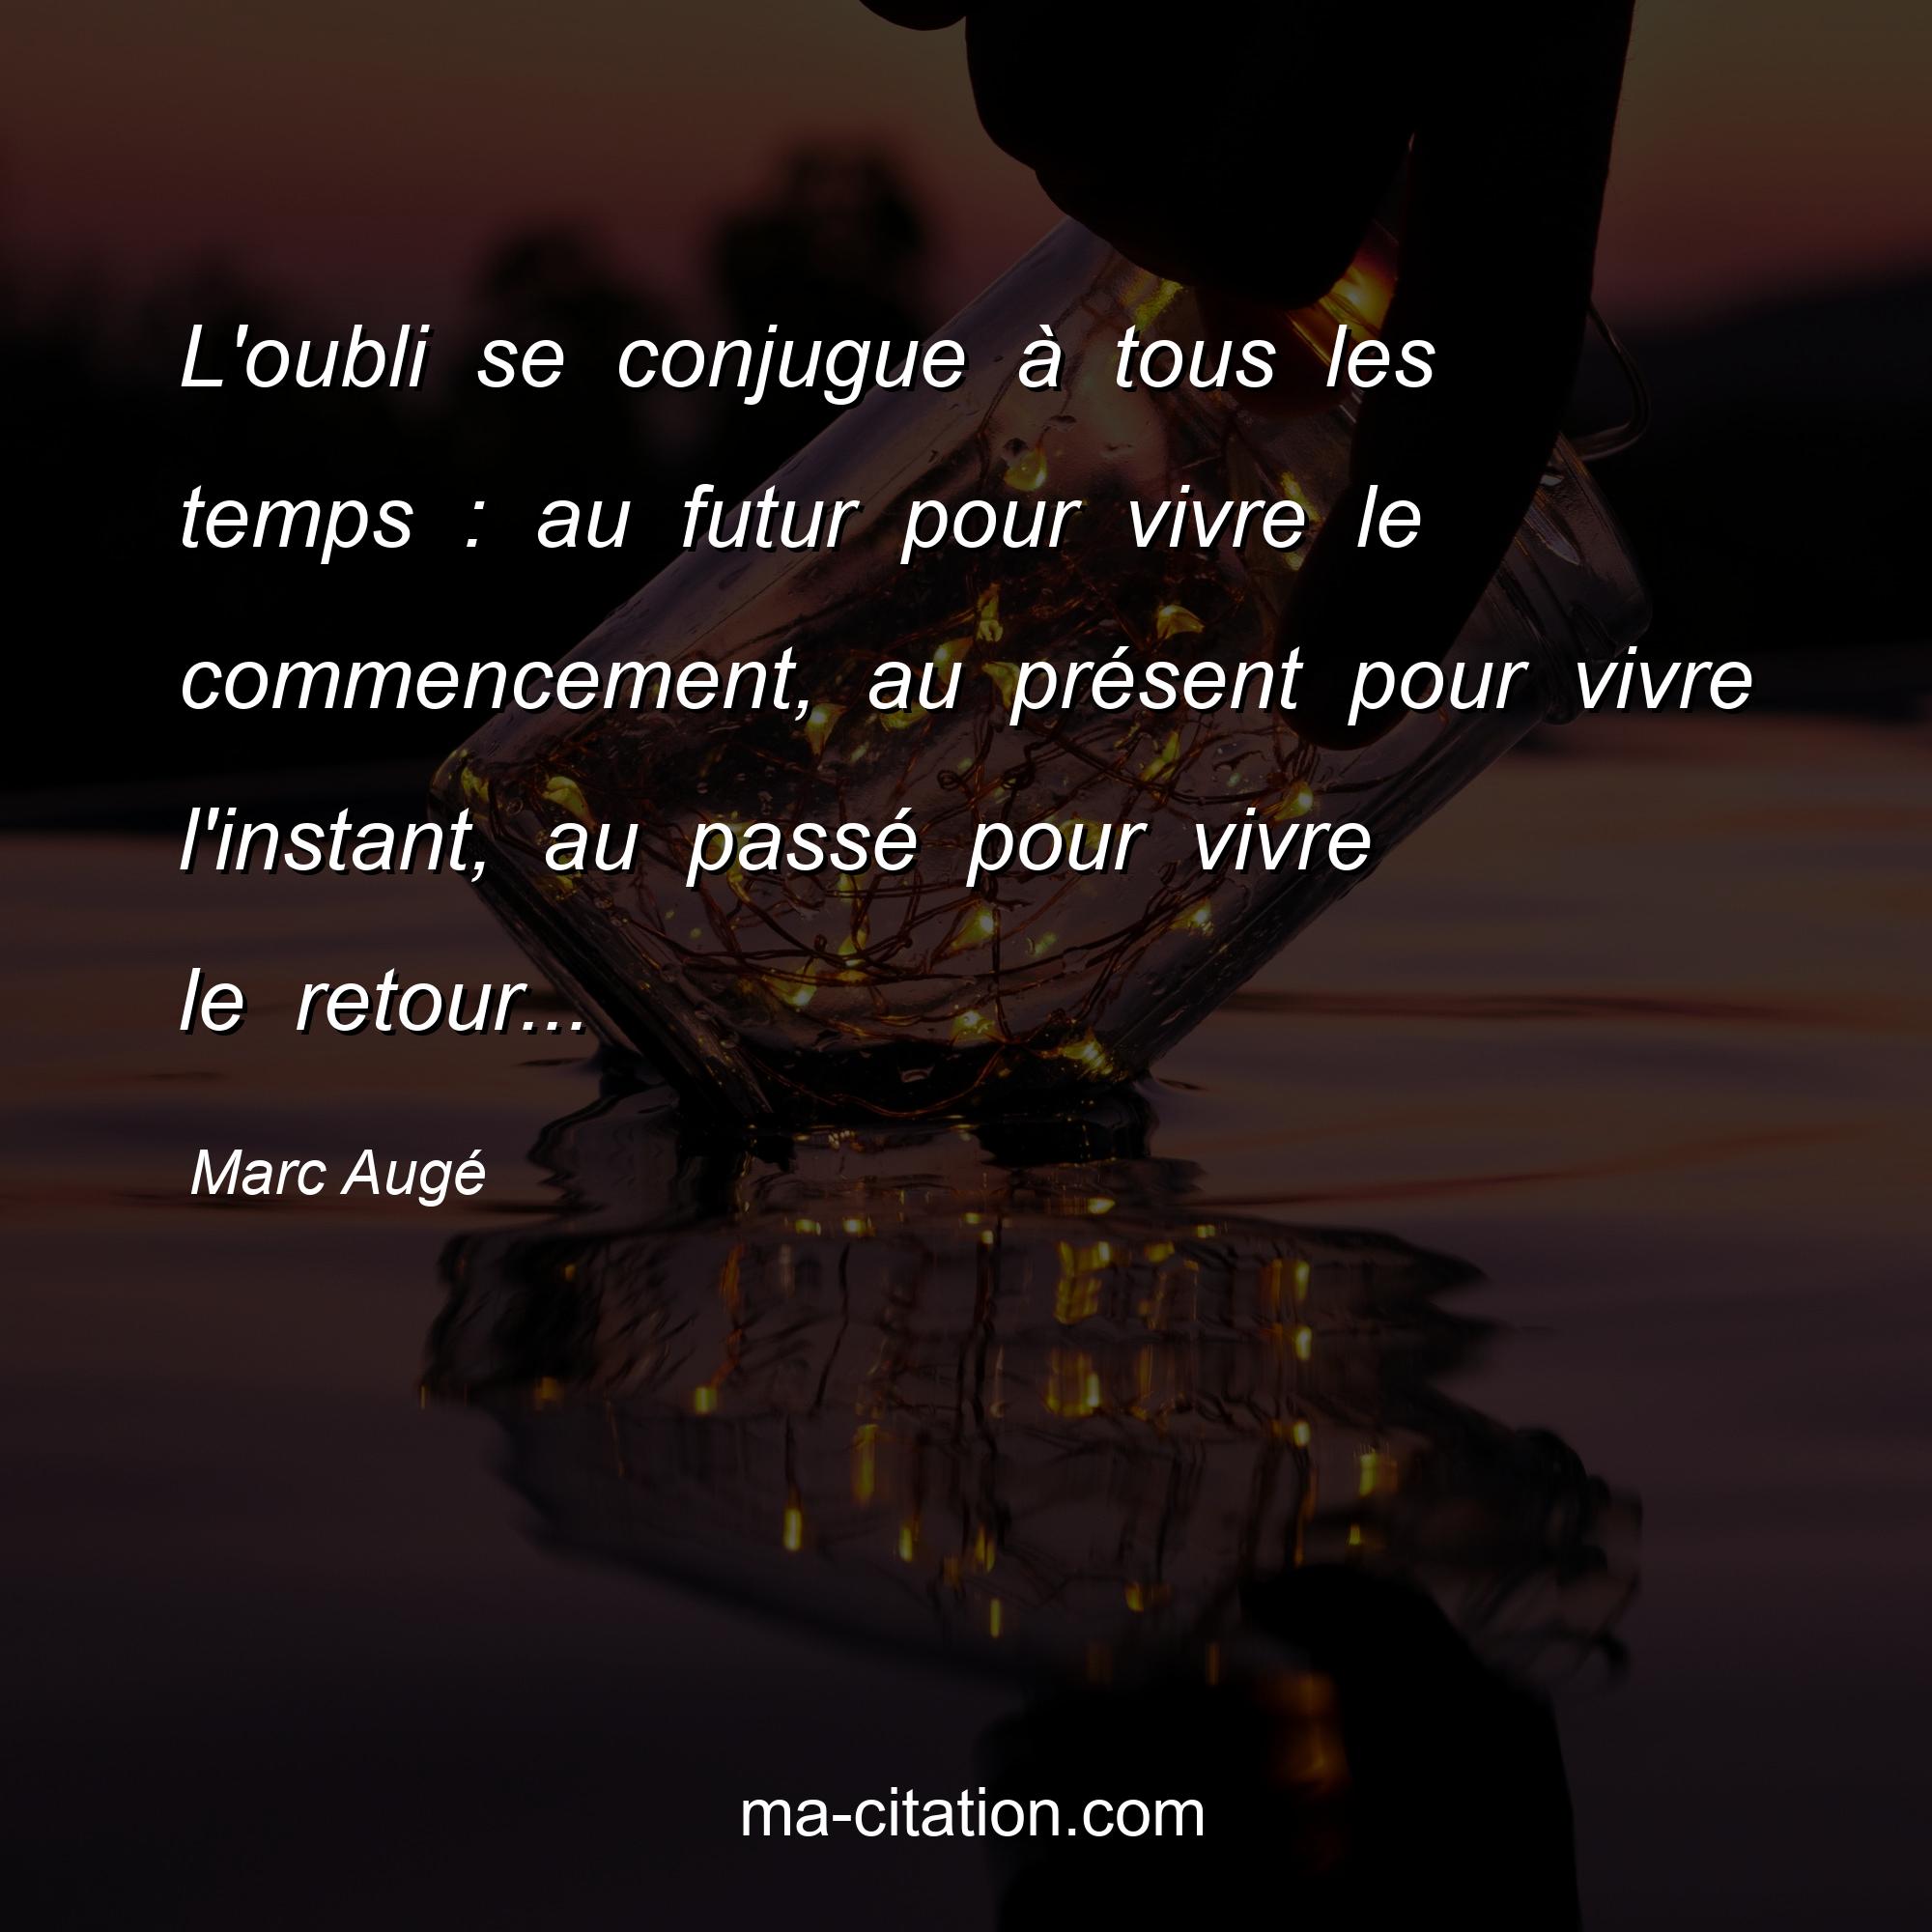 Marc Augé : L'oubli se conjugue à tous les temps : au futur pour vivre le commencement, au présent pour vivre l'instant, au passé pour vivre le retour...